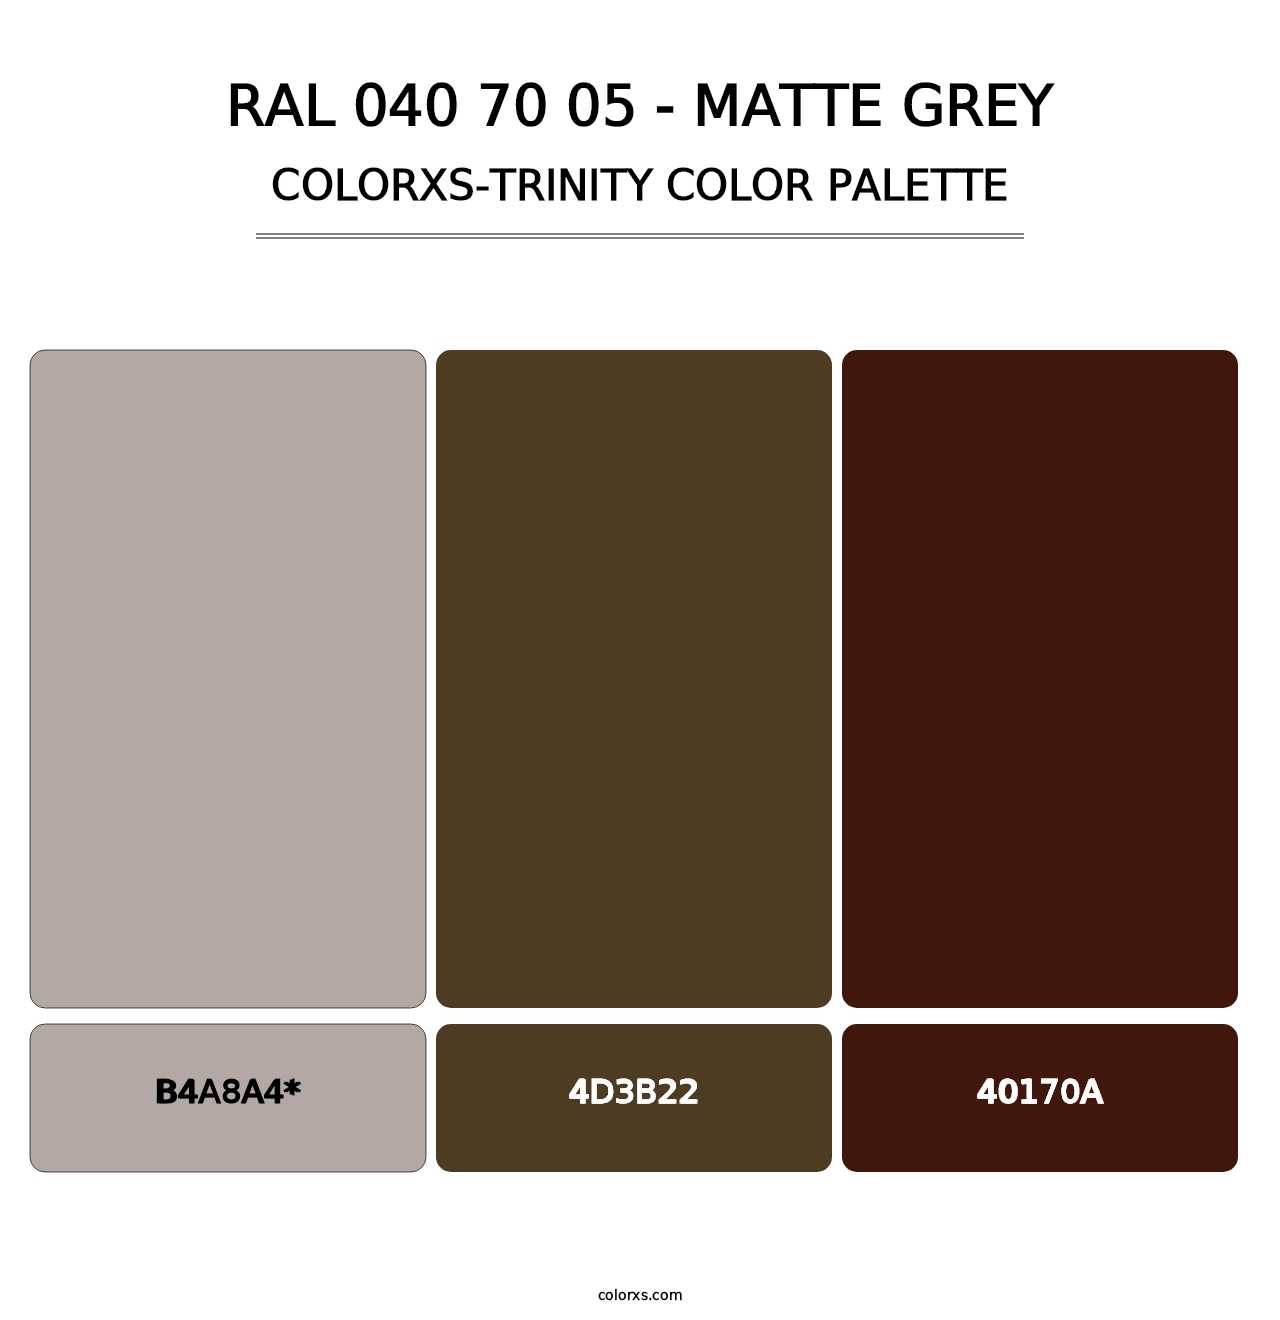 RAL 040 70 05 - Matte Grey - Colorxs Trinity Palette